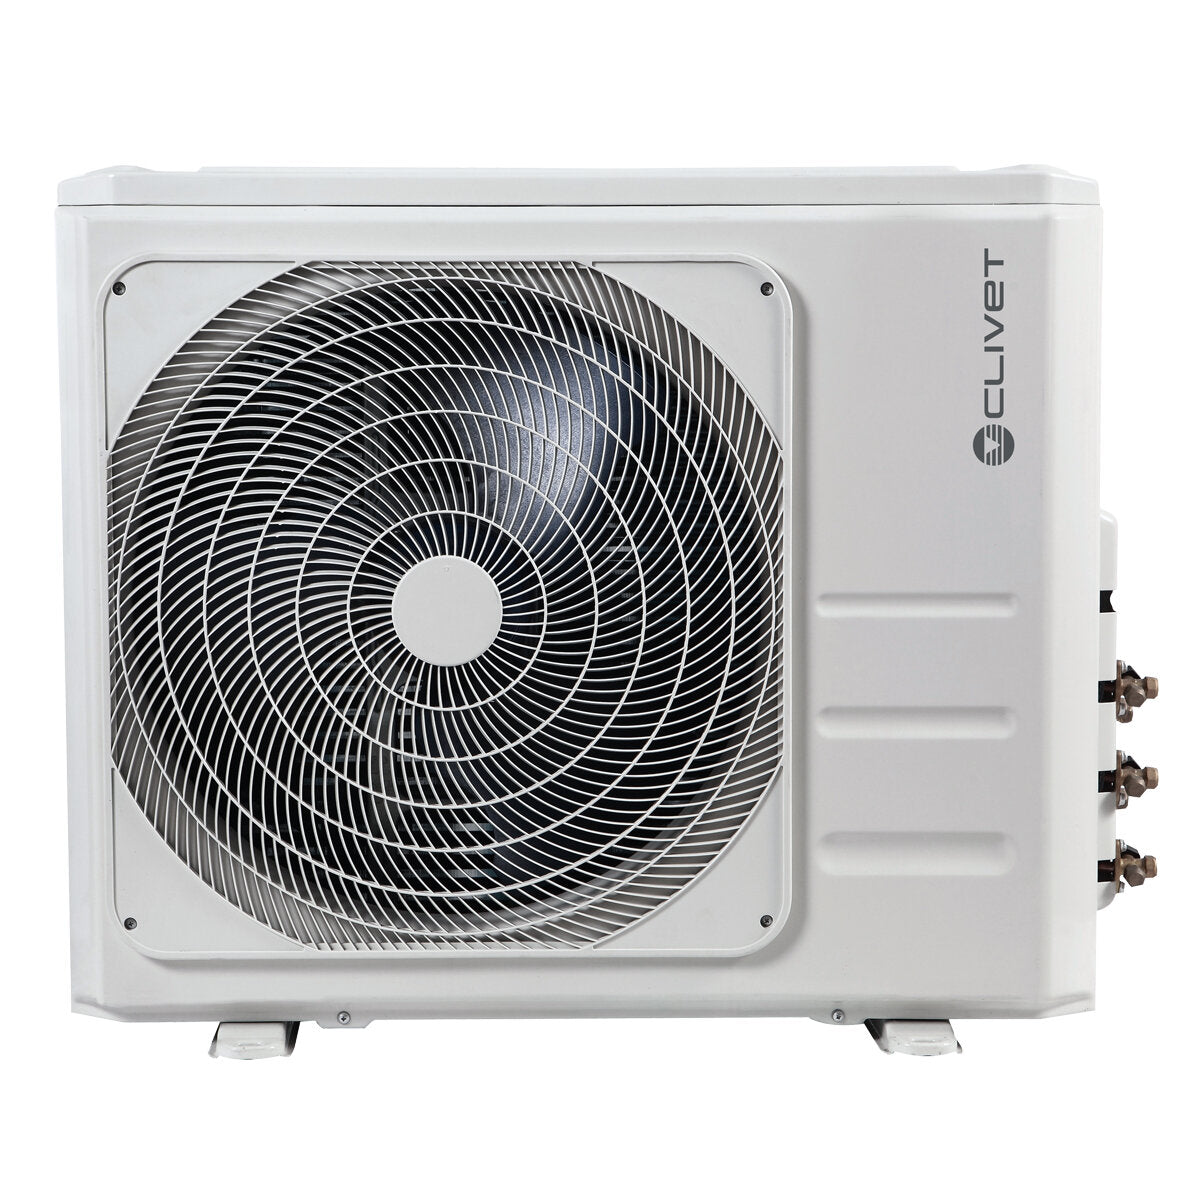 Clivet Cristallo air conditioner 2 split panels 9000+9000+9000+9000 BTU inverter A++ wifi external unit 8.2 kW